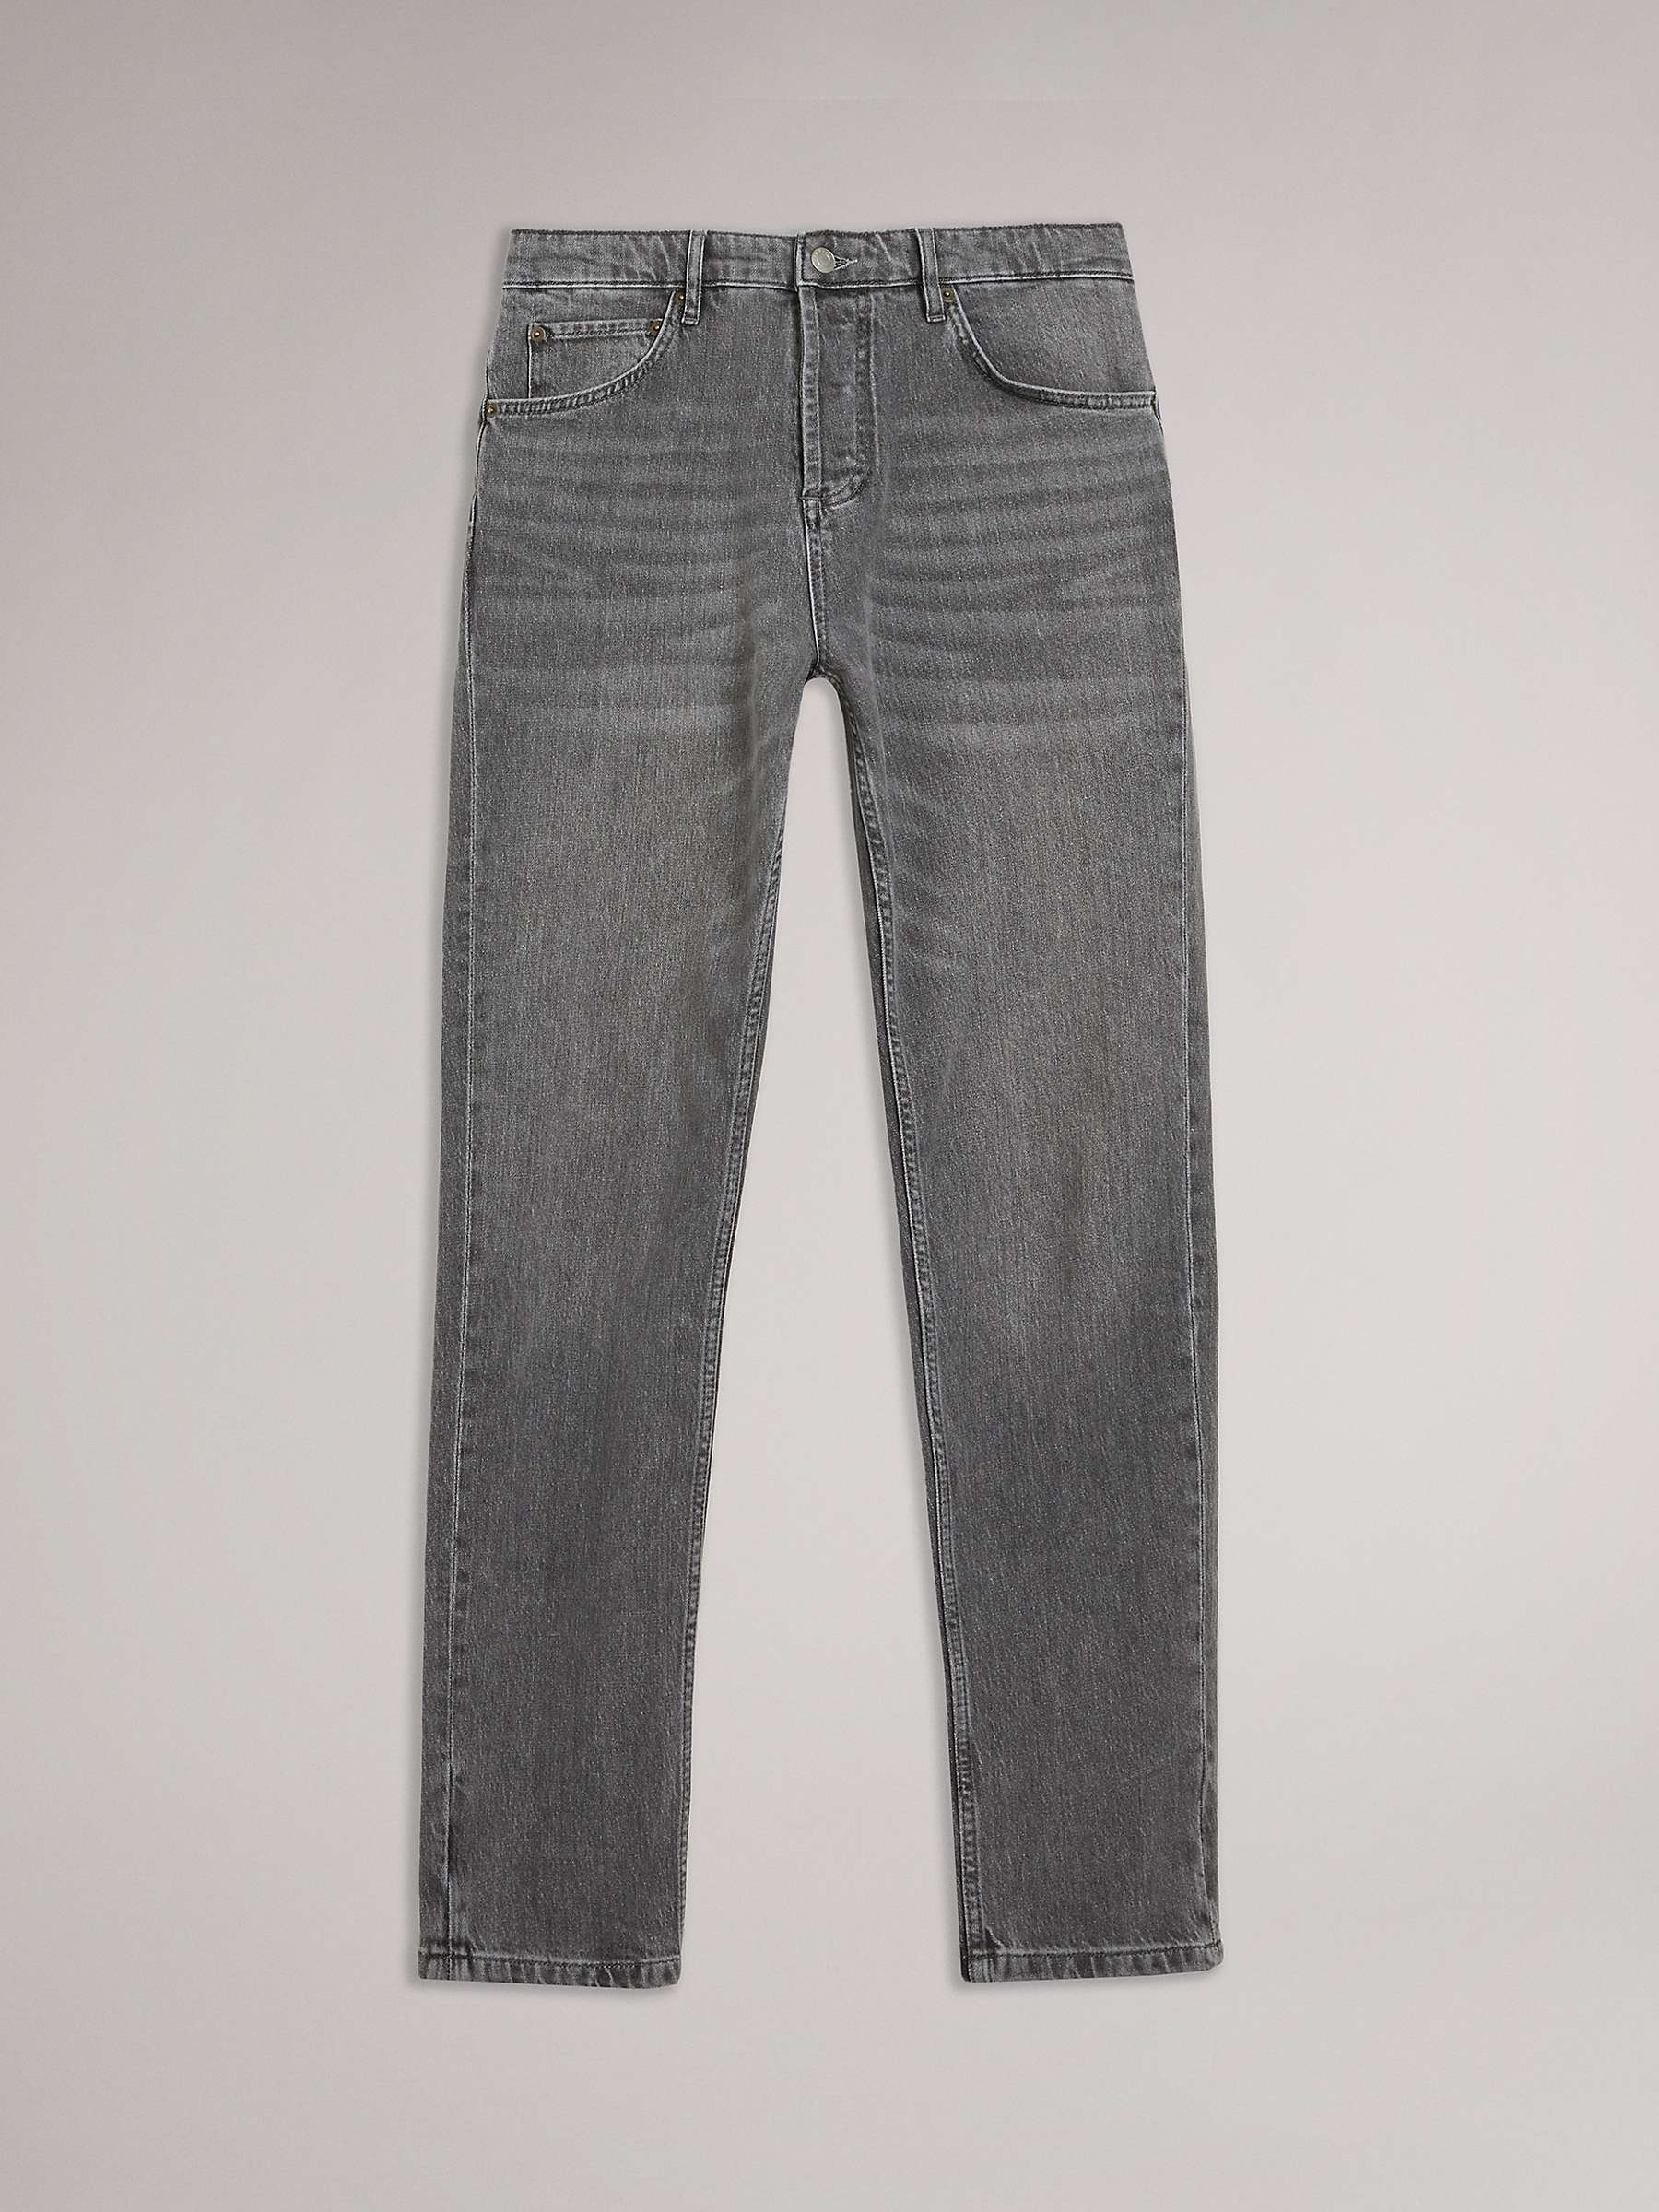 Buy Ted Baker Elvvis Slim Fit Stretch Jeans, Grey Online at johnlewis.com